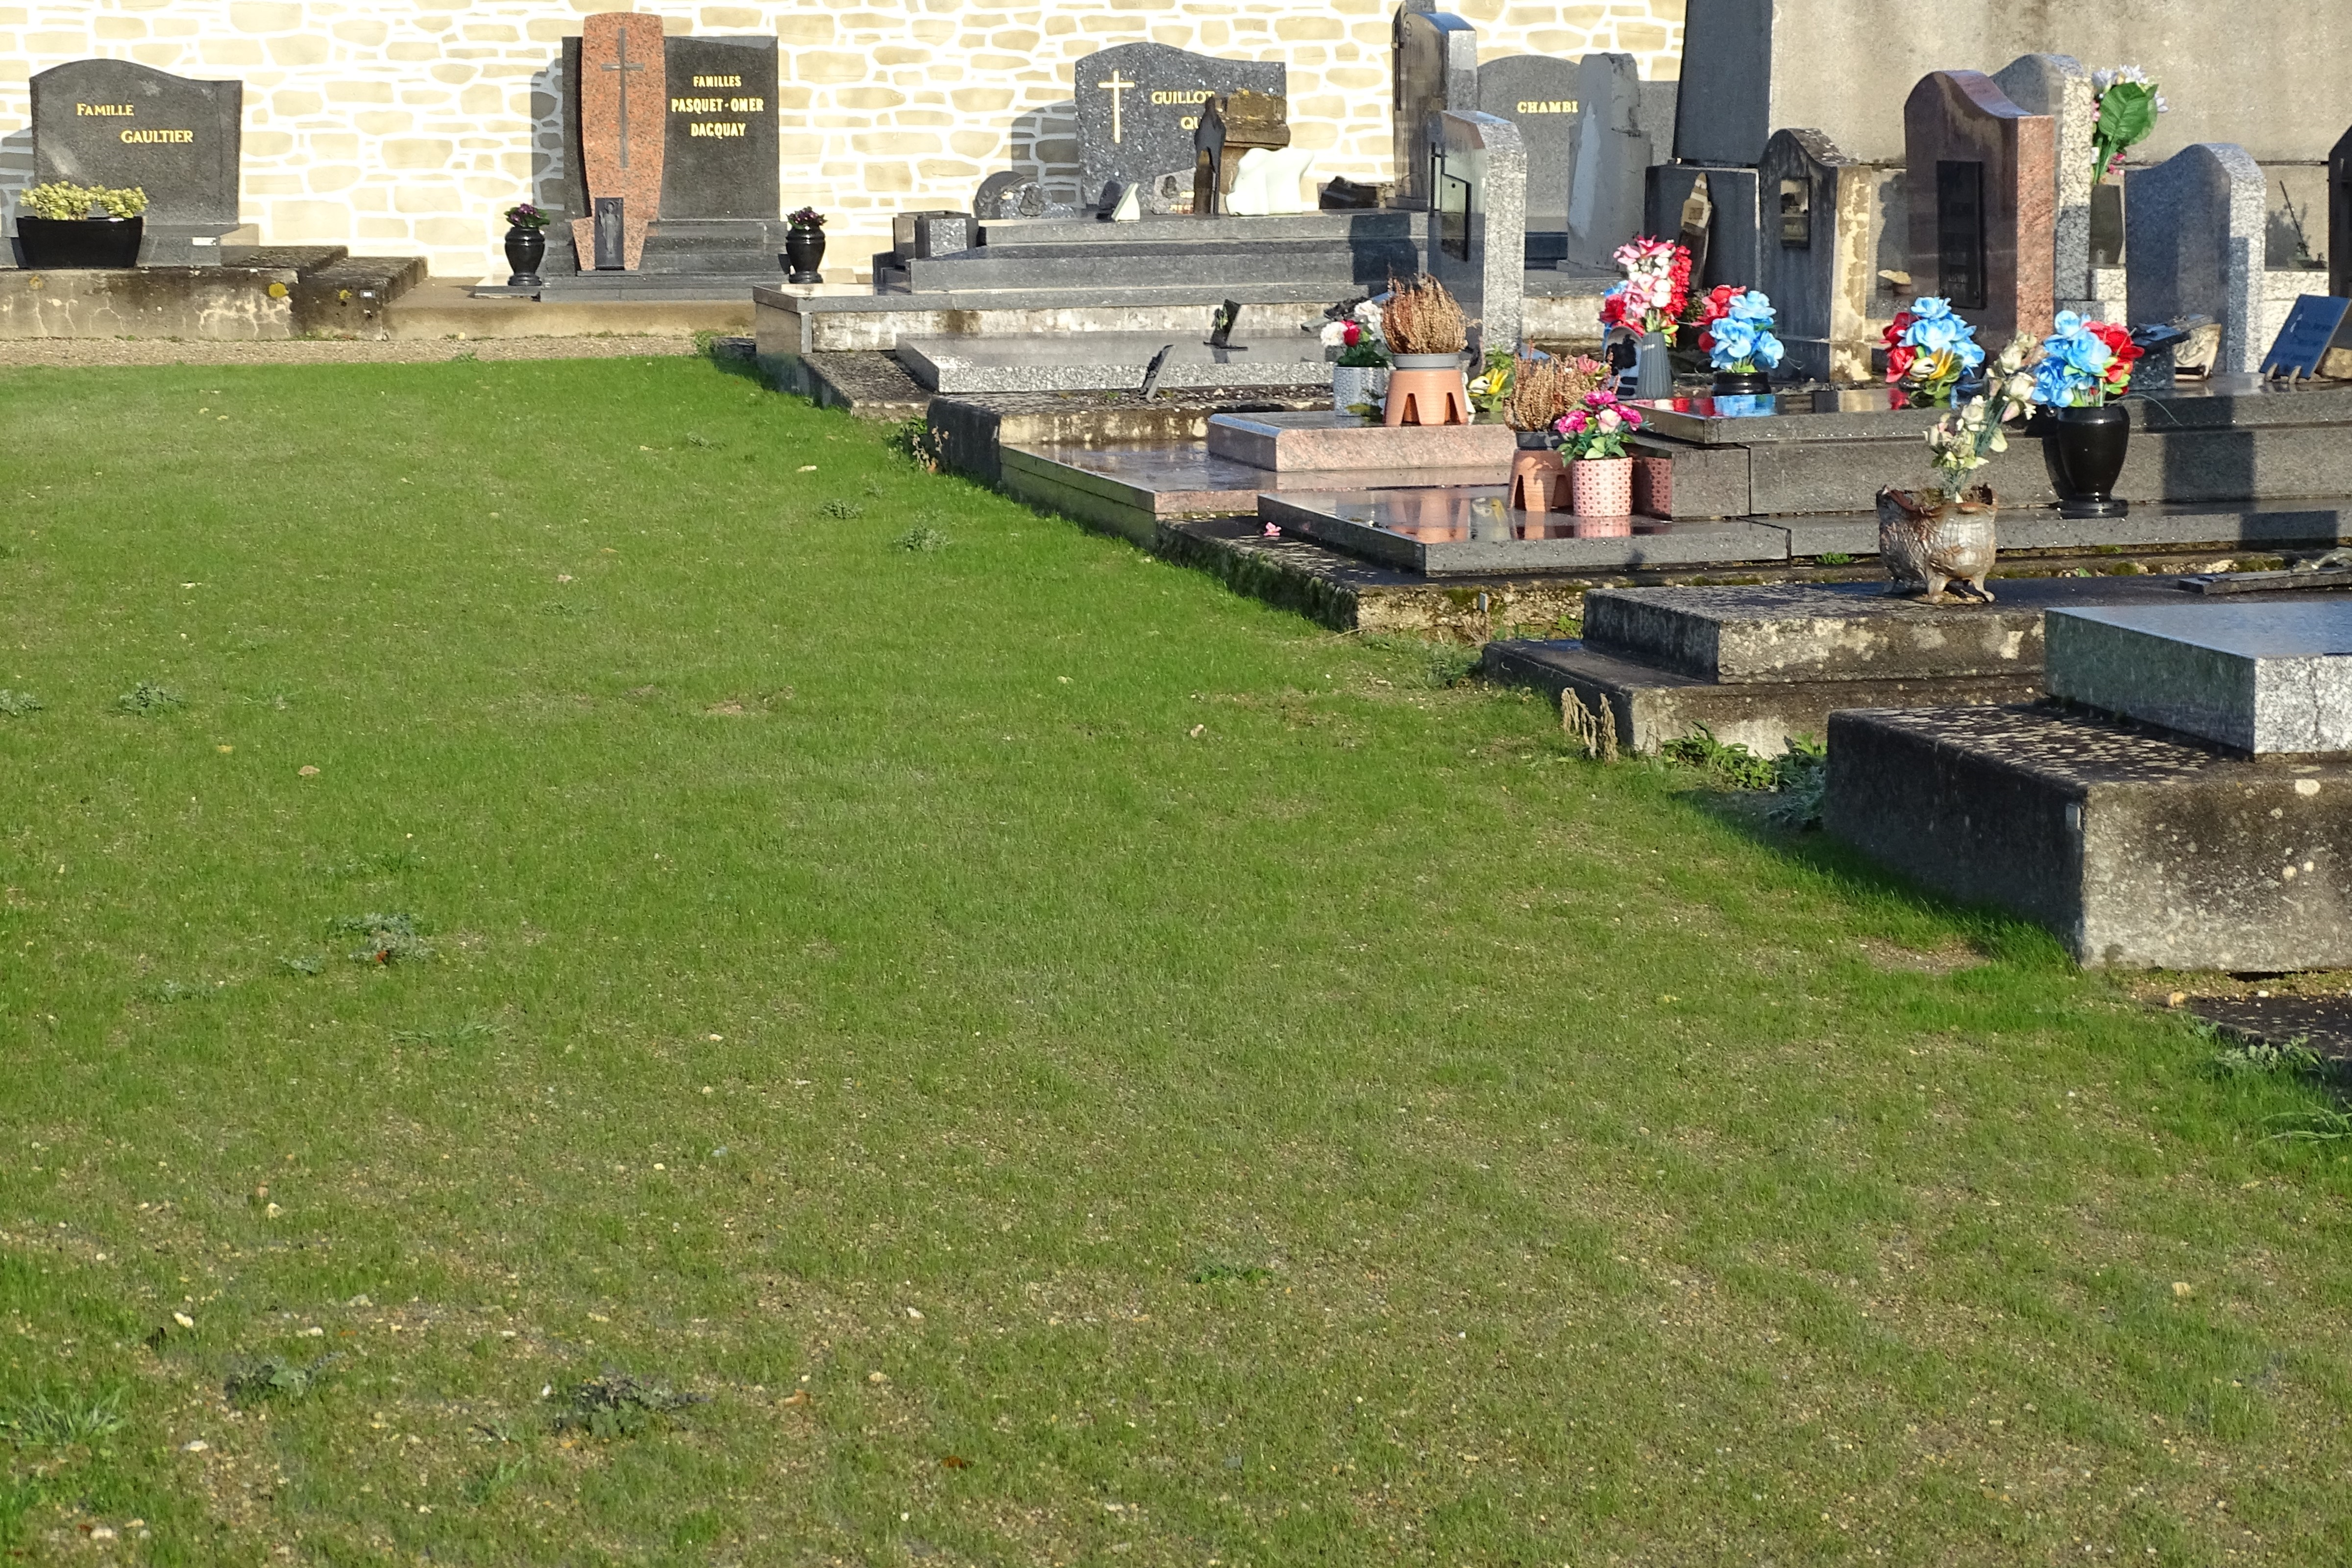 Entretien des cimetières : place aux solutions alternatives